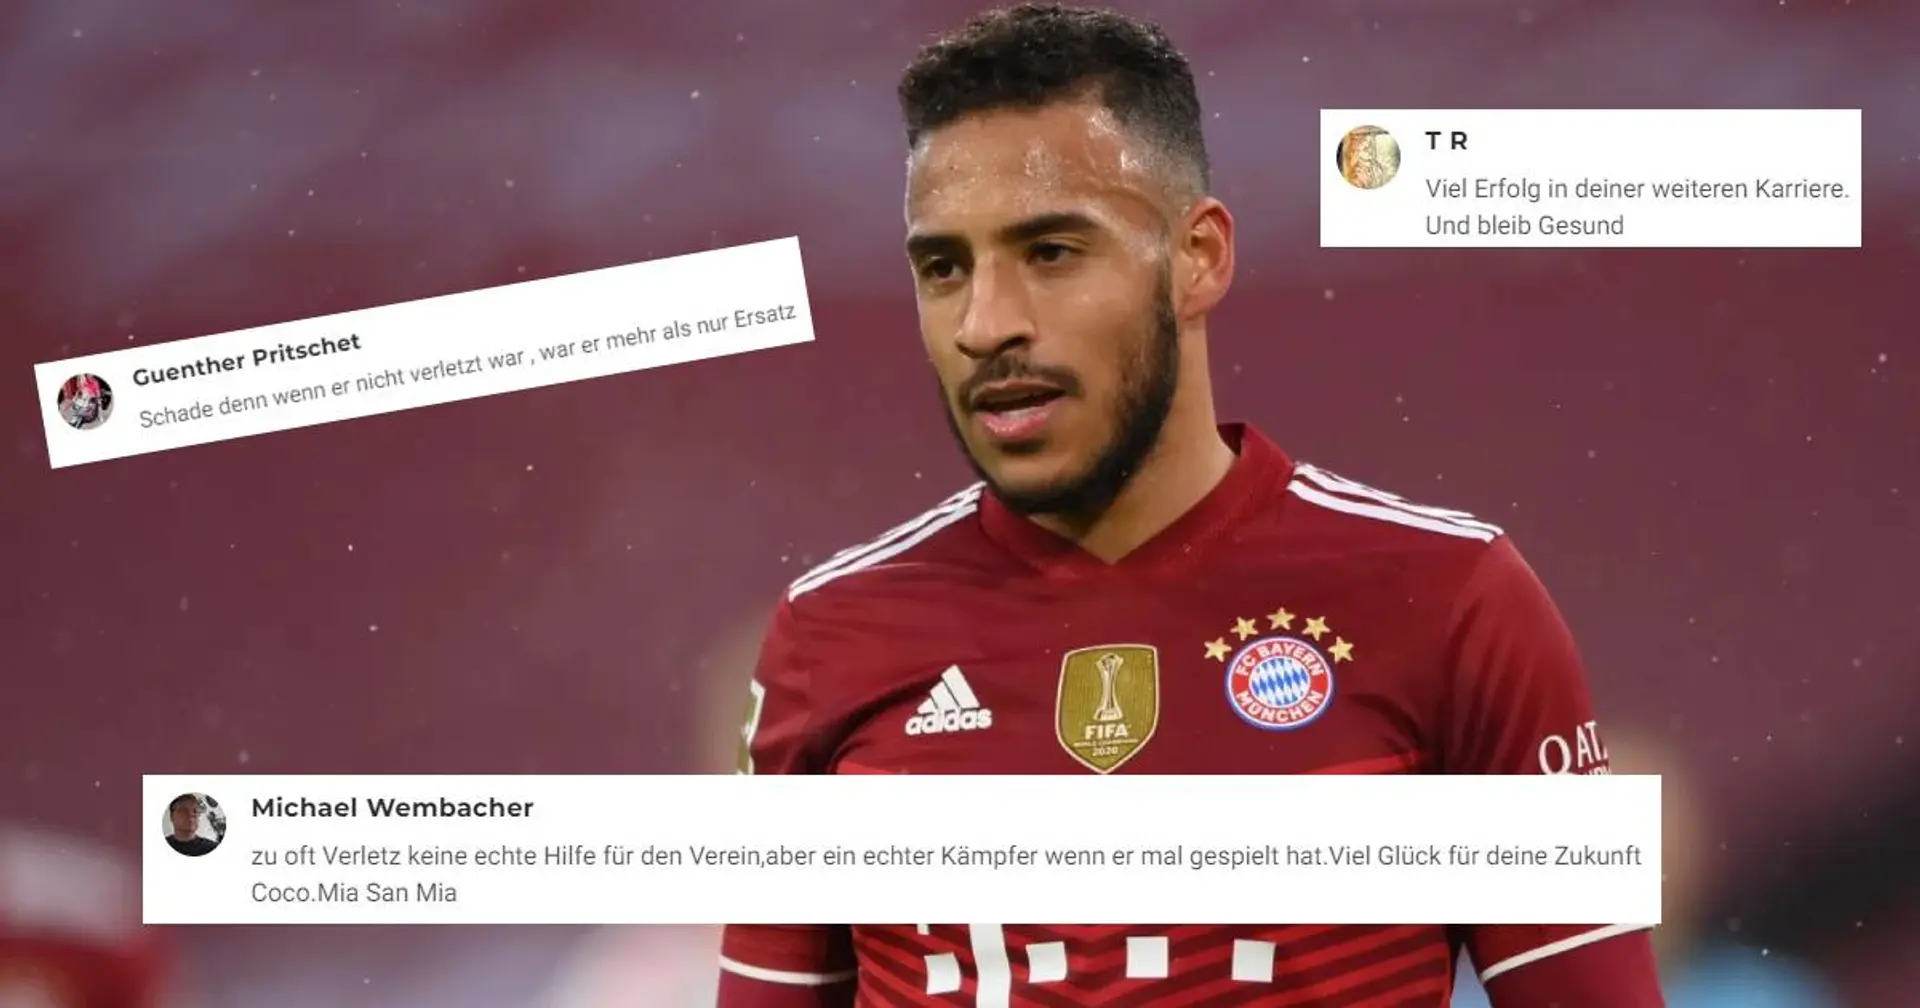 "Ein echter Kämpfer, wenn er mal gespielt hat": So verabschieden sich Bayern-Fans von Corentin Tolisso